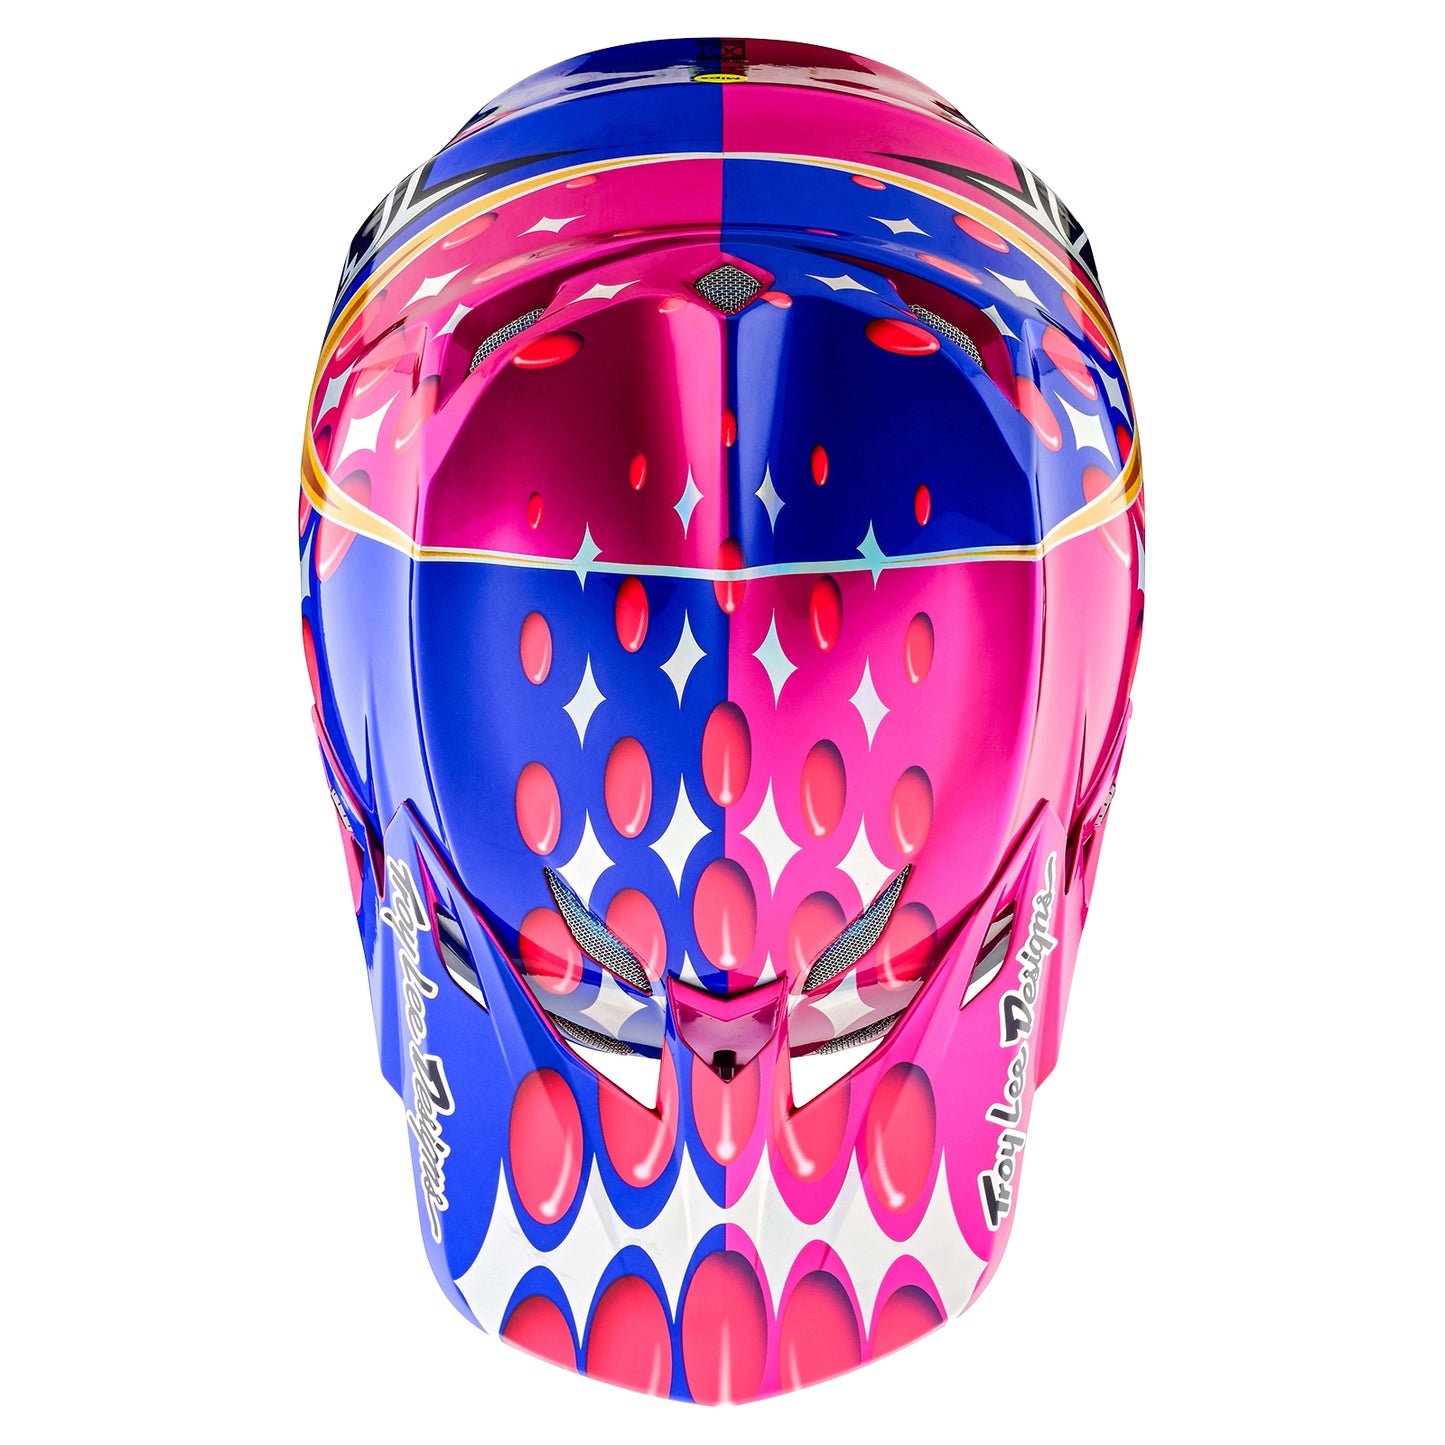 TLD SE5 Composite Helmet W/MIPS Blurr Pink